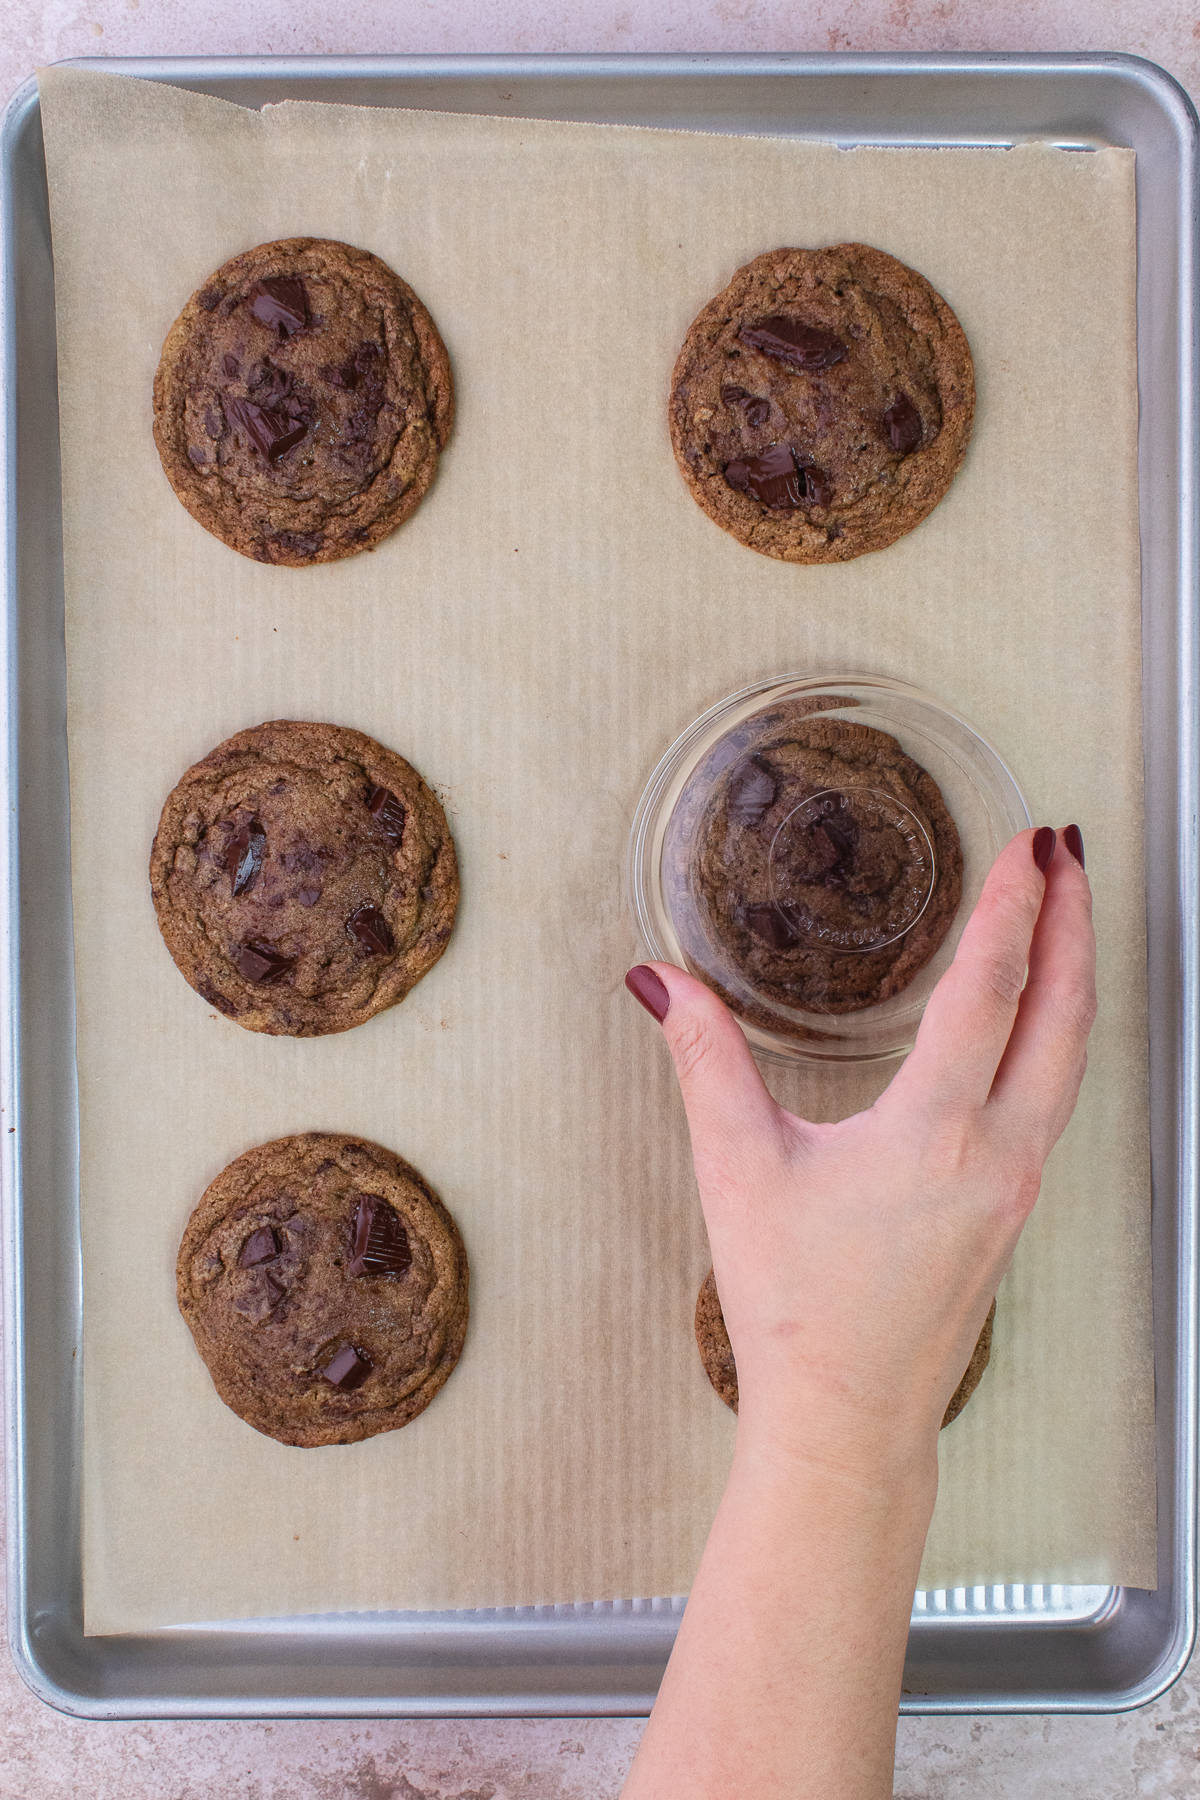 Six baked cookies on cookies sheet